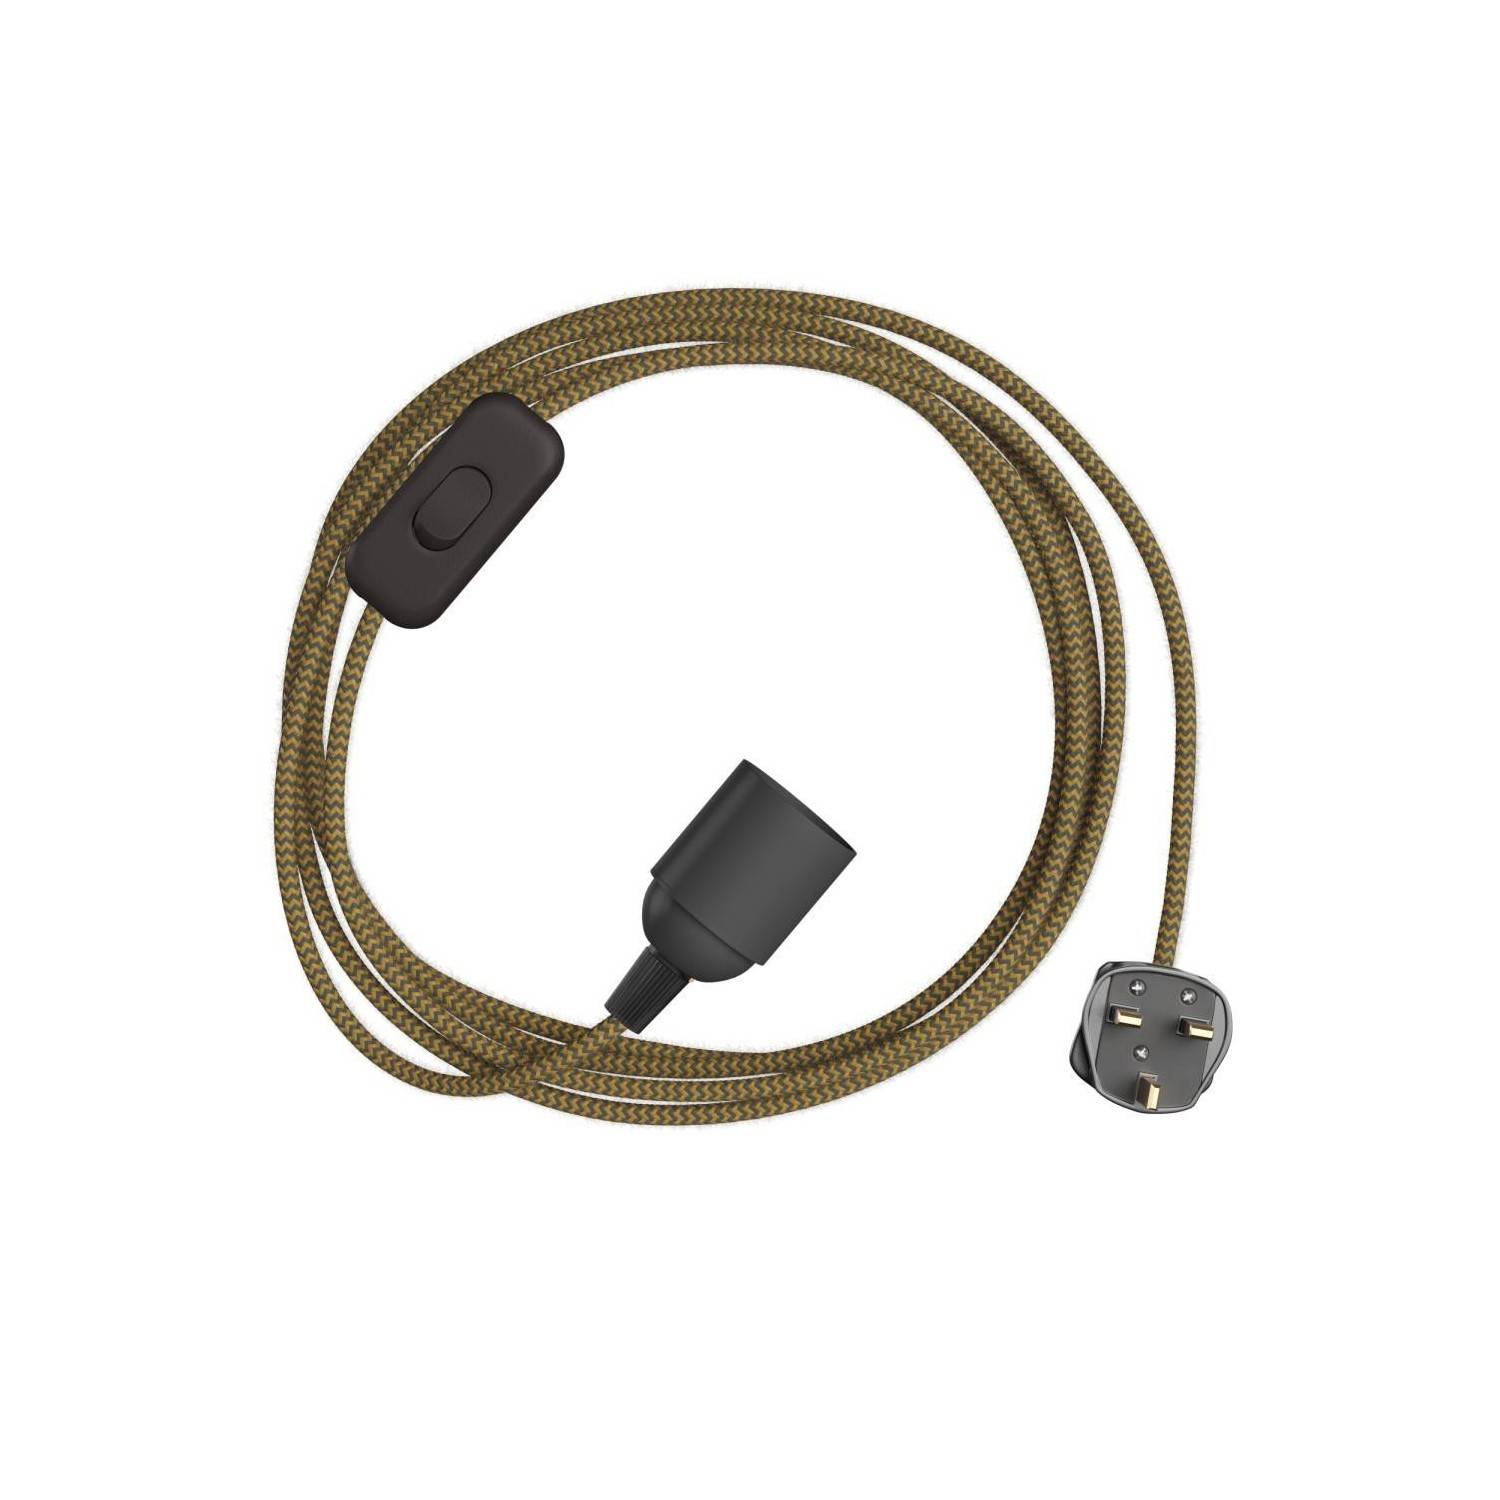 SnakeBis Zig-Zag - Juego de cables con portalámparas, cable de tela Zig-Zag y enchufe del Reino Unido